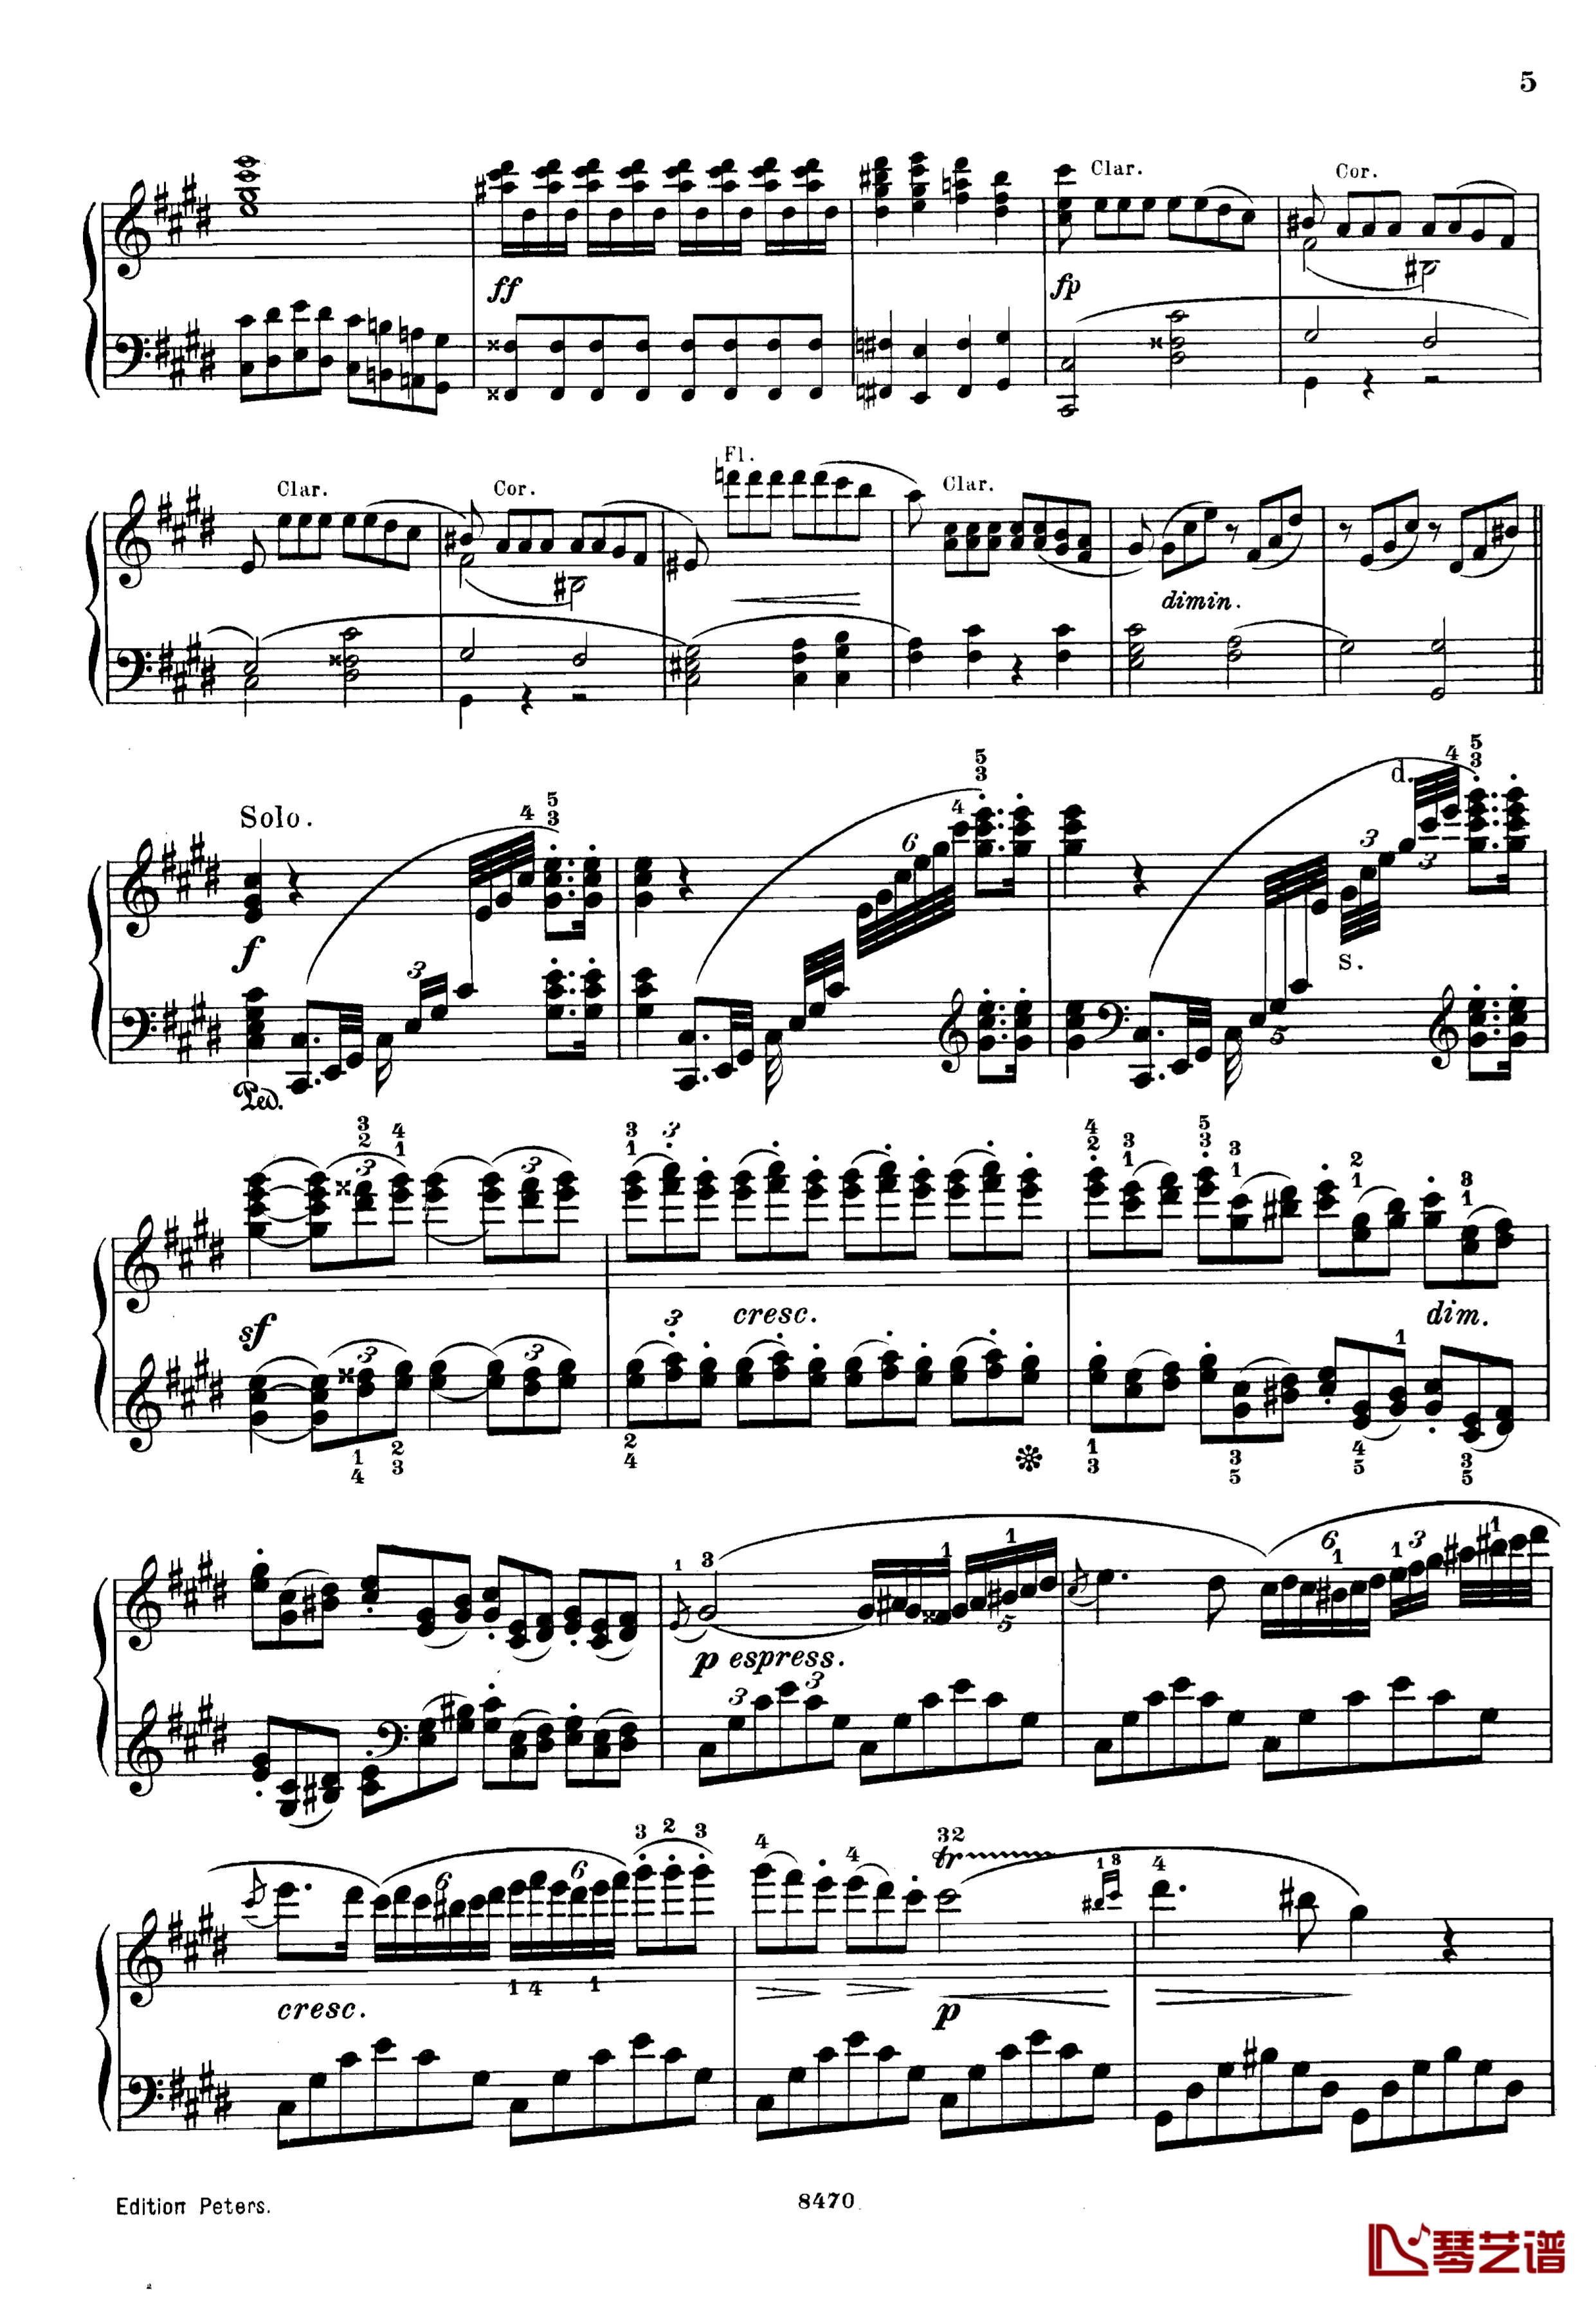 升c小调第三钢琴协奏曲Op.55钢琴谱-克里斯蒂安-里斯5